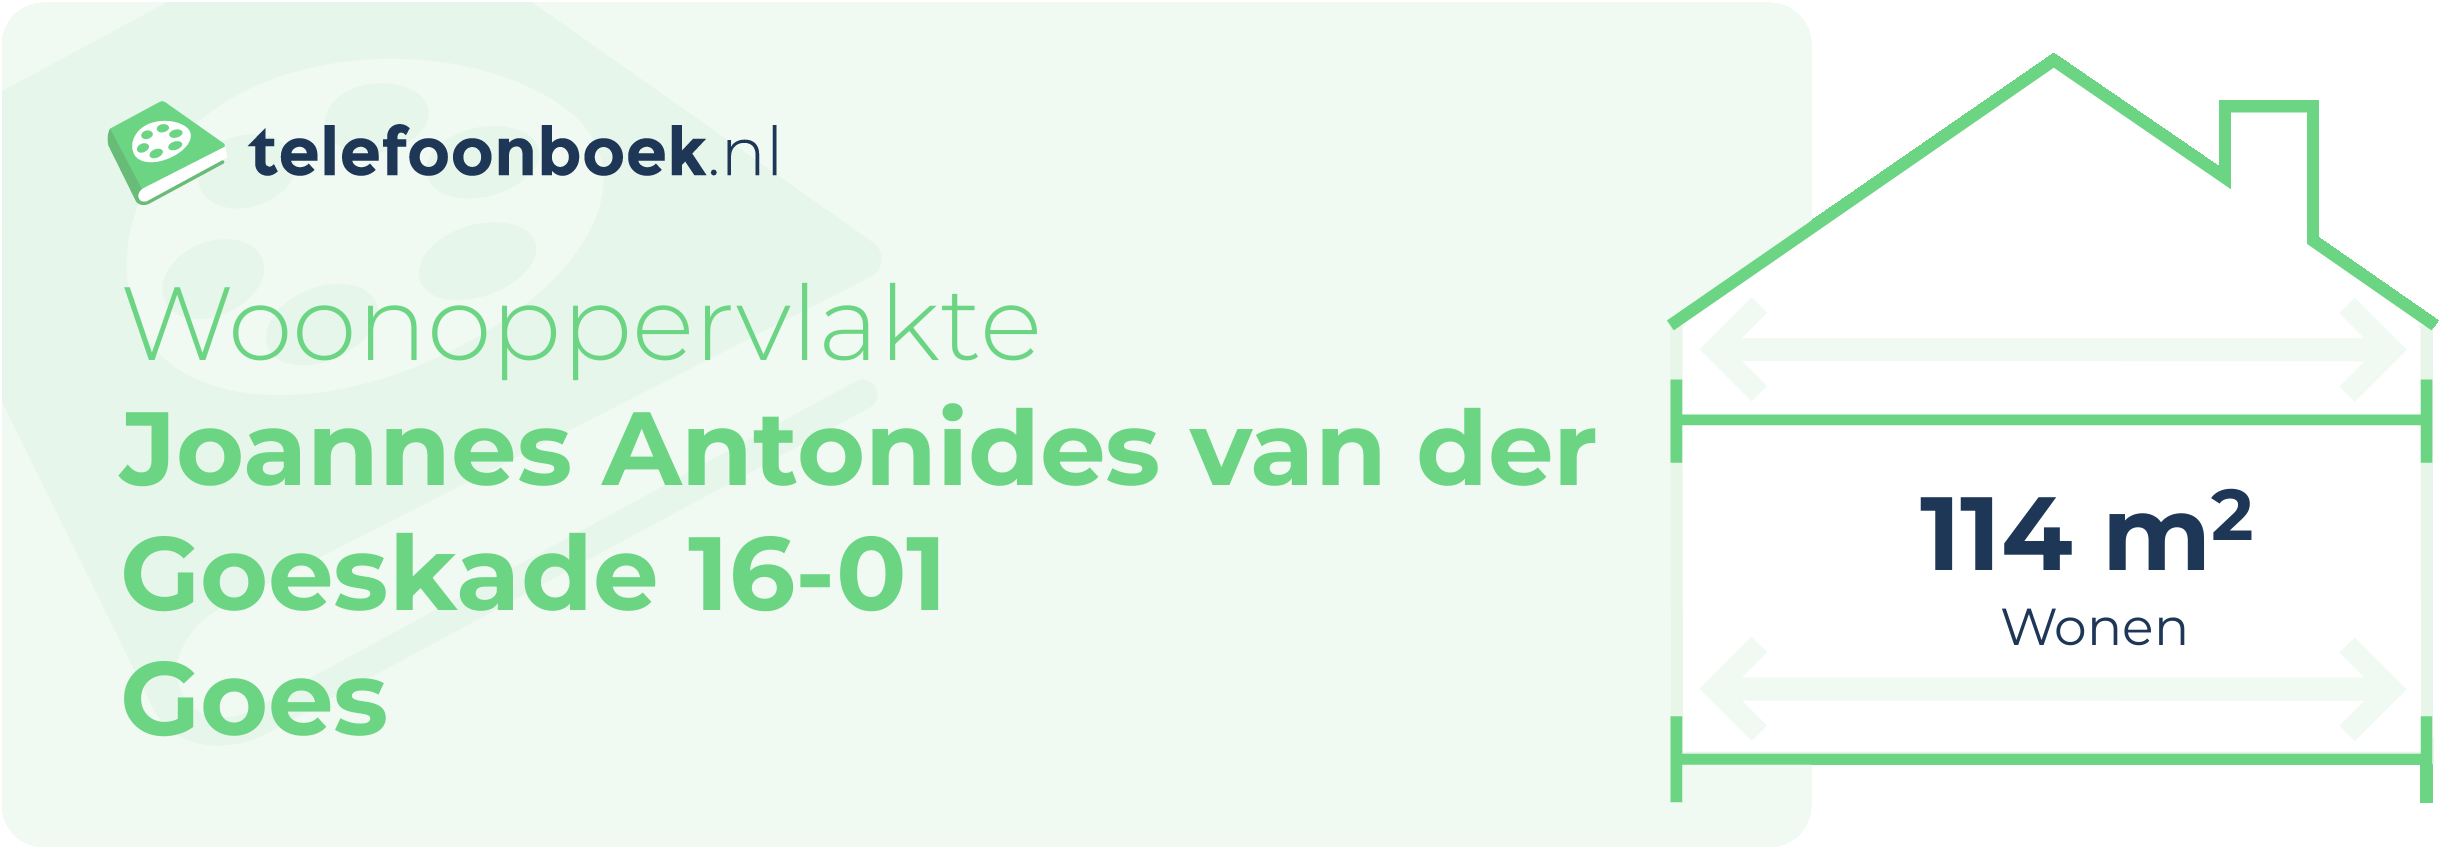 Woonoppervlakte Joannes Antonides Van Der Goeskade 16-01 Goes